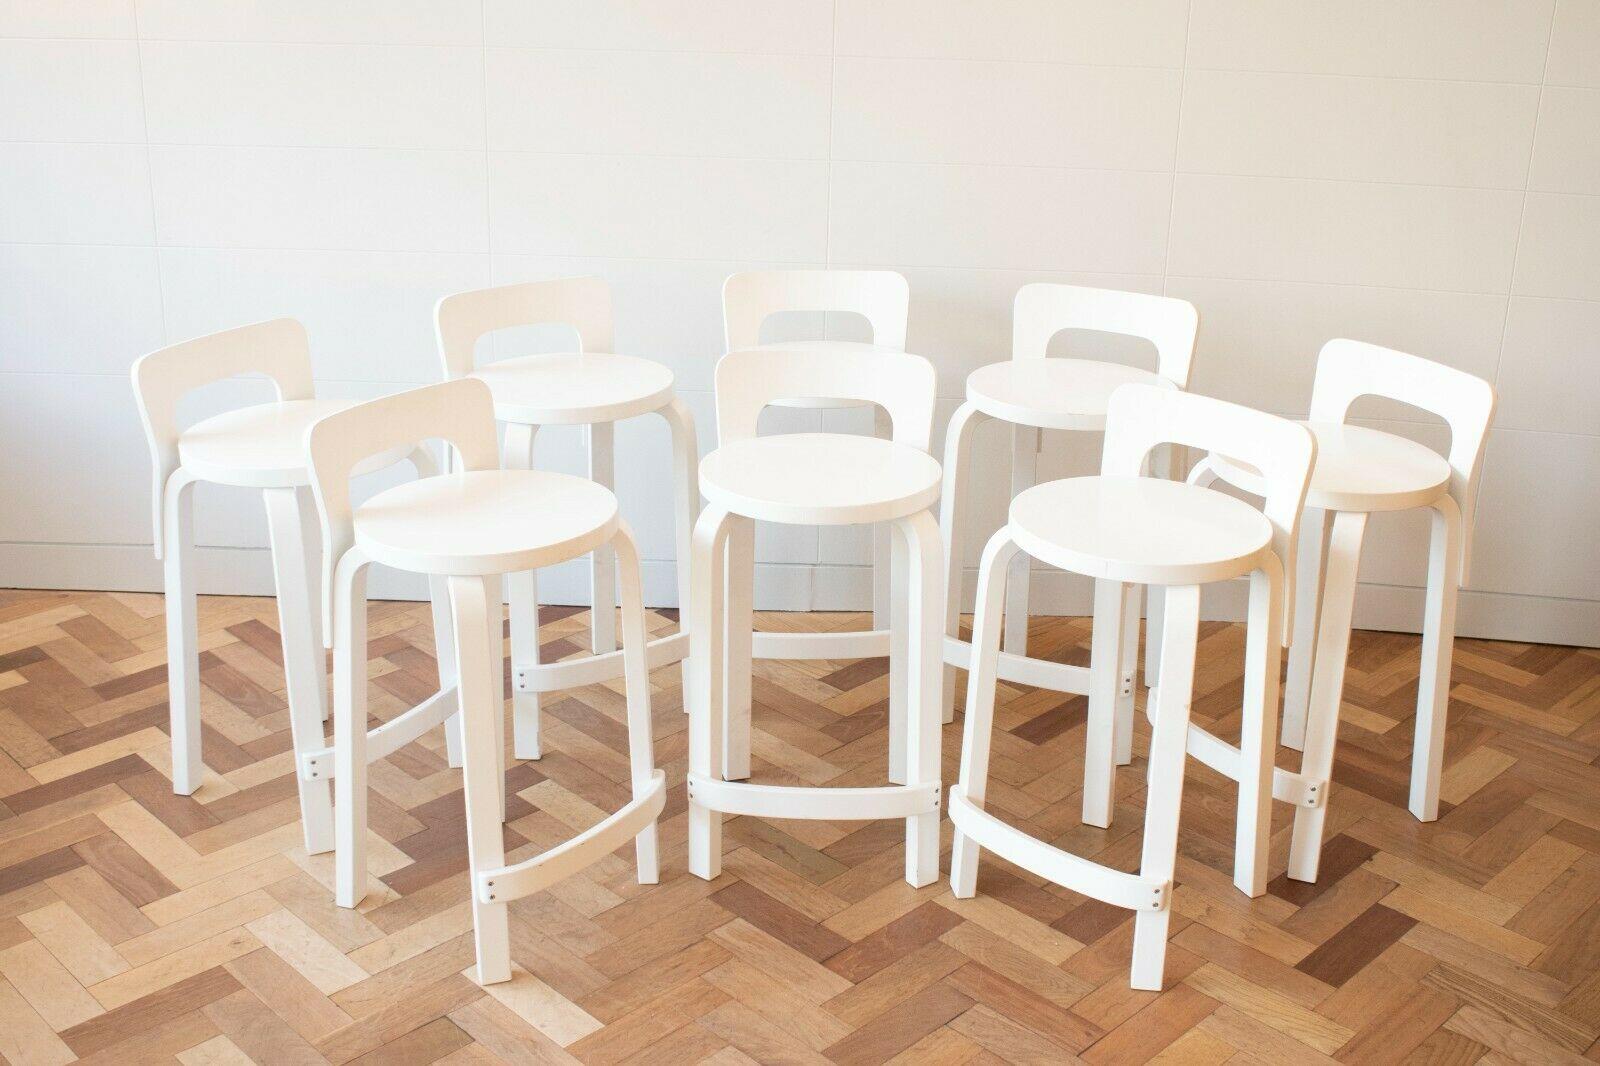 Artek Bar Stool - For Sale on 1stDibs | artek bar stools, artek barstol,  artek high stool